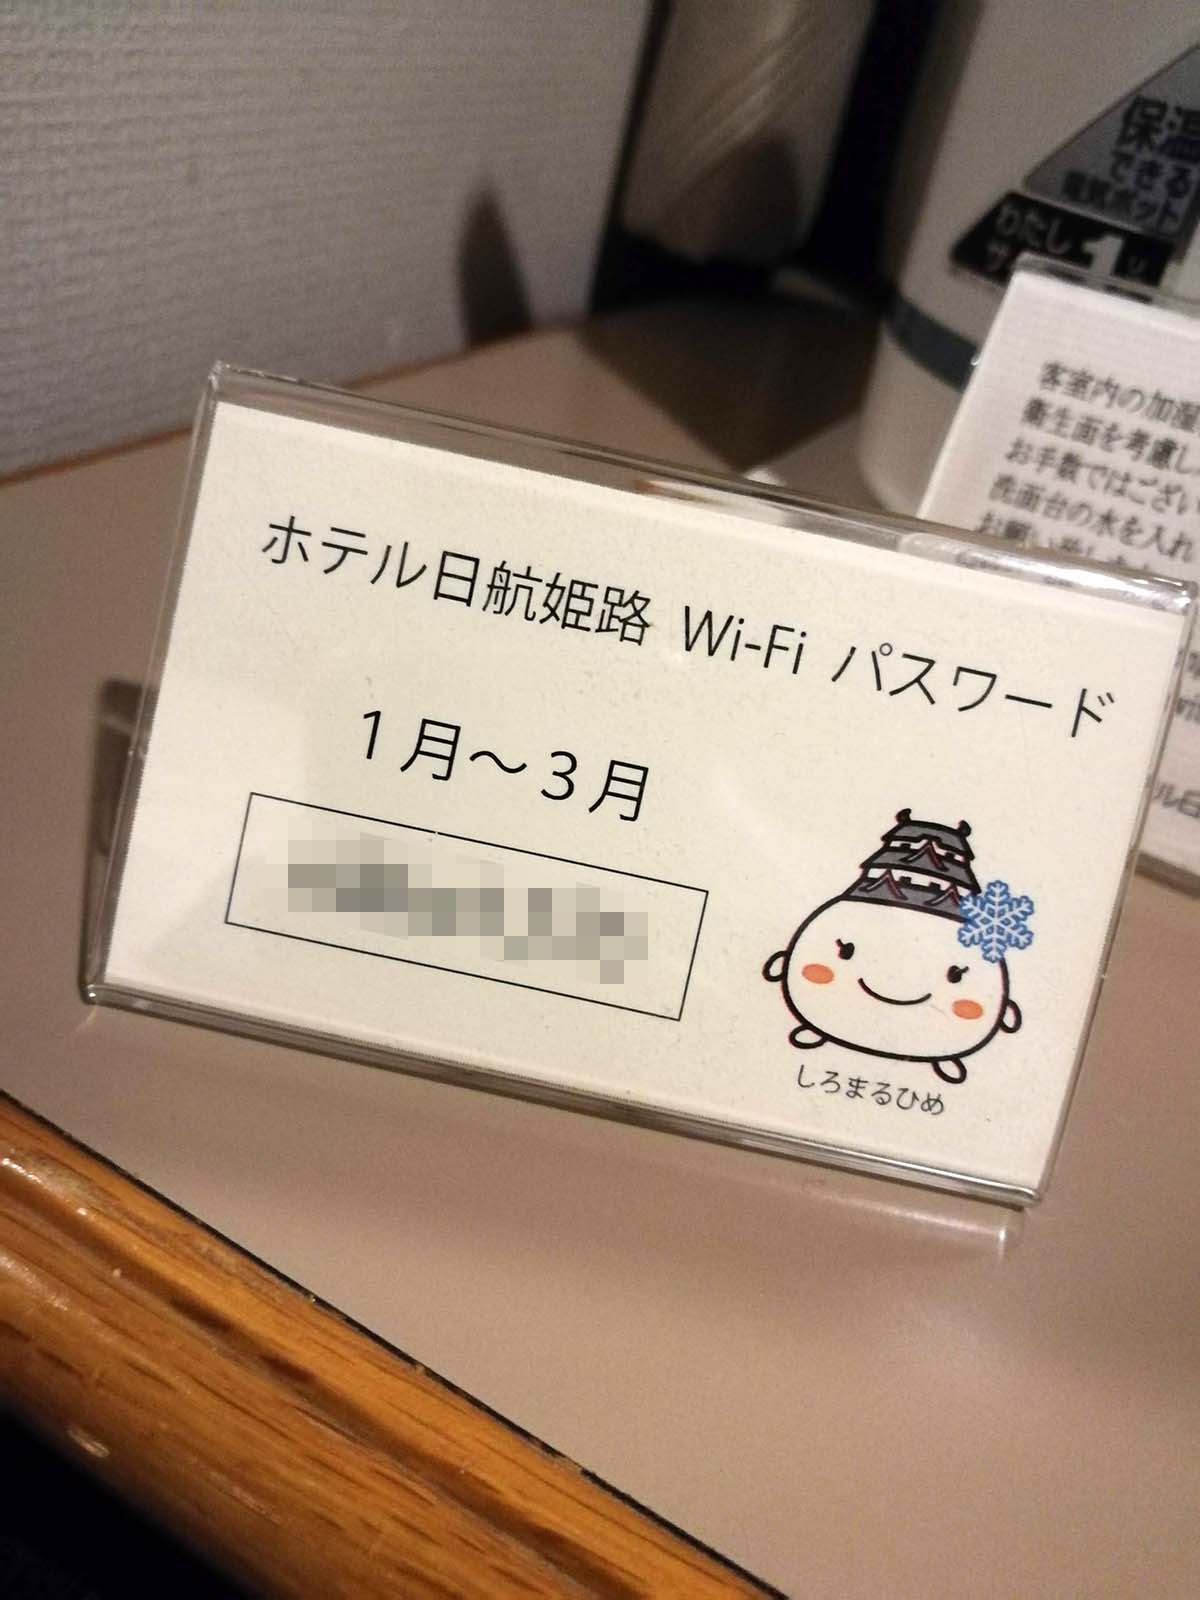 Wi-Fiパスワード